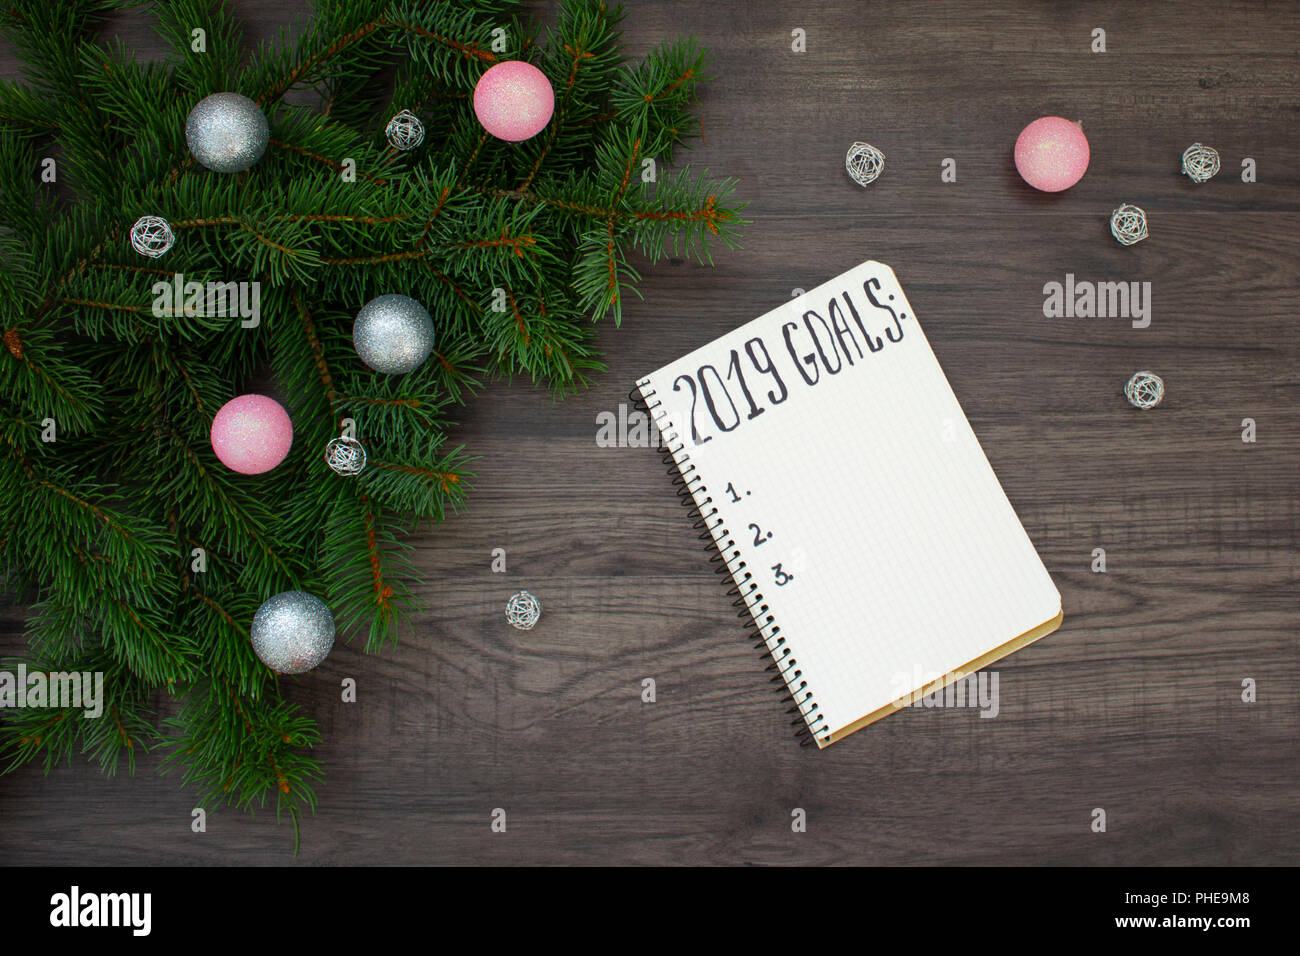 2019 Objectifs du Nouvel An. Ordinateur portable et arbre de Noël sur fond de bois Banque D'Images